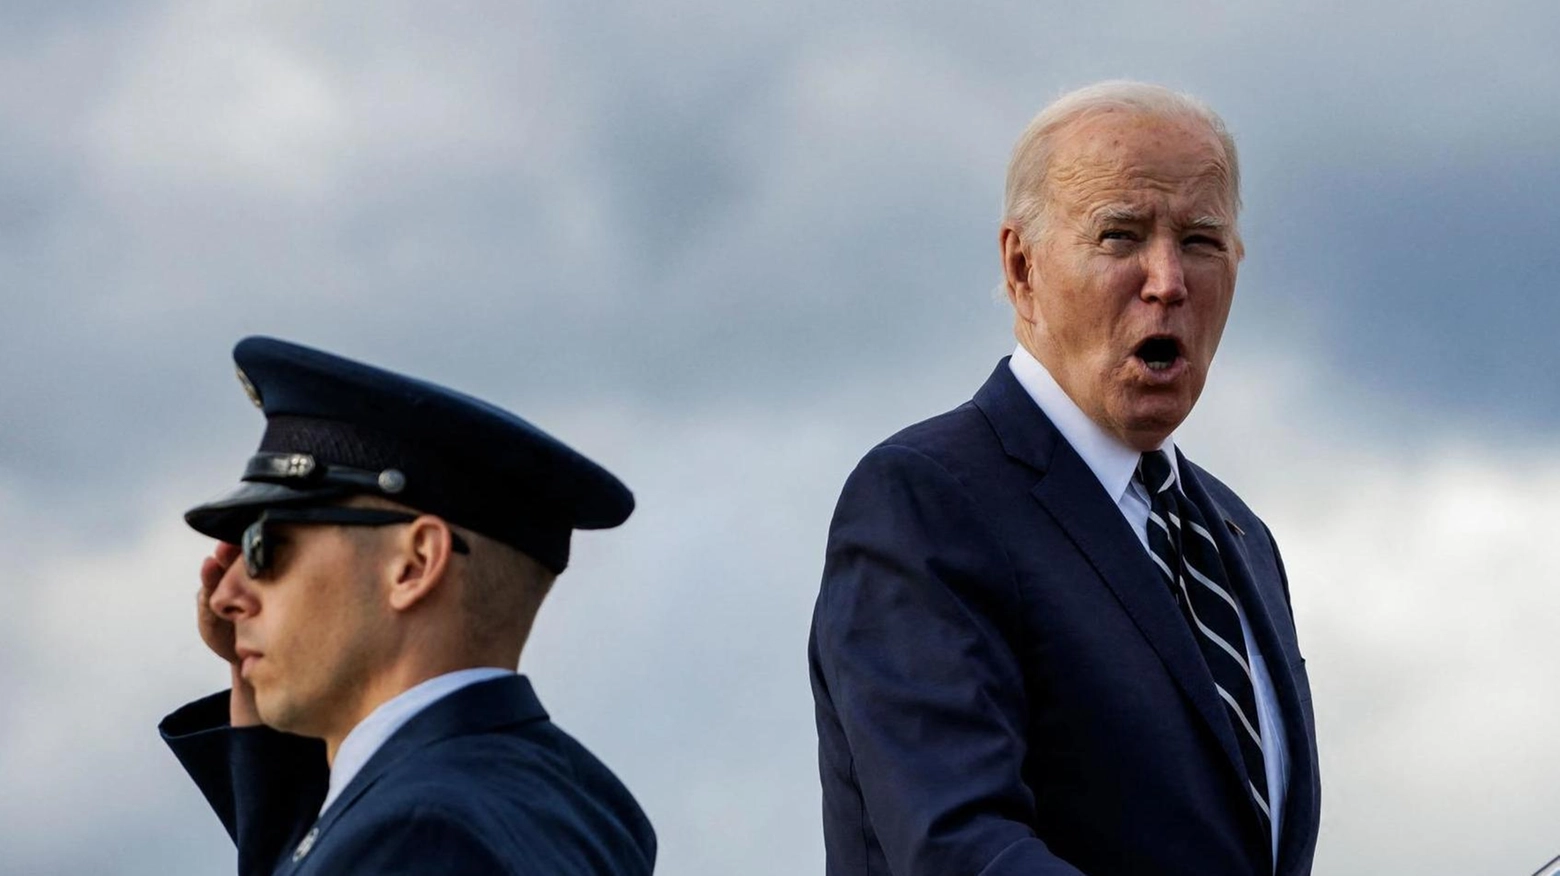 Le reazioni. Biden rientra a Washington: pronti a tutto